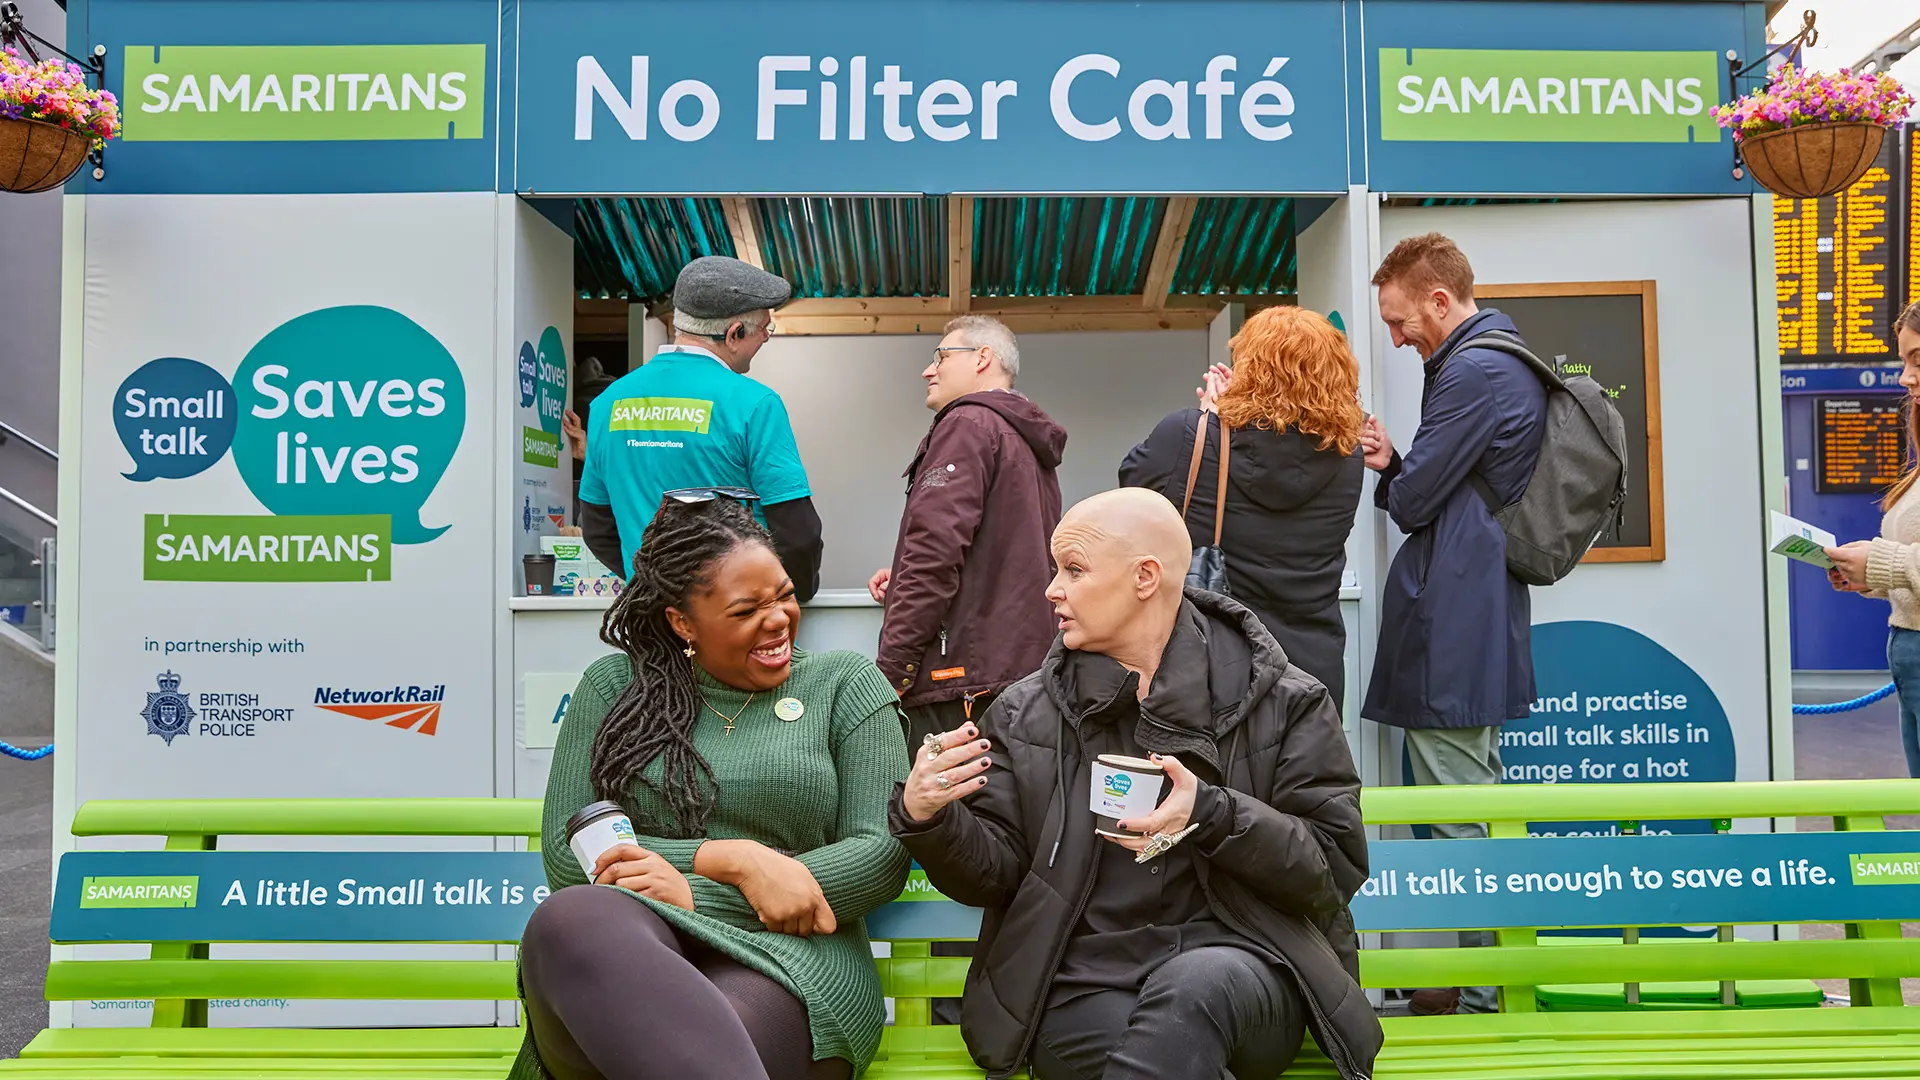 Samaritans - No Filter Cafe